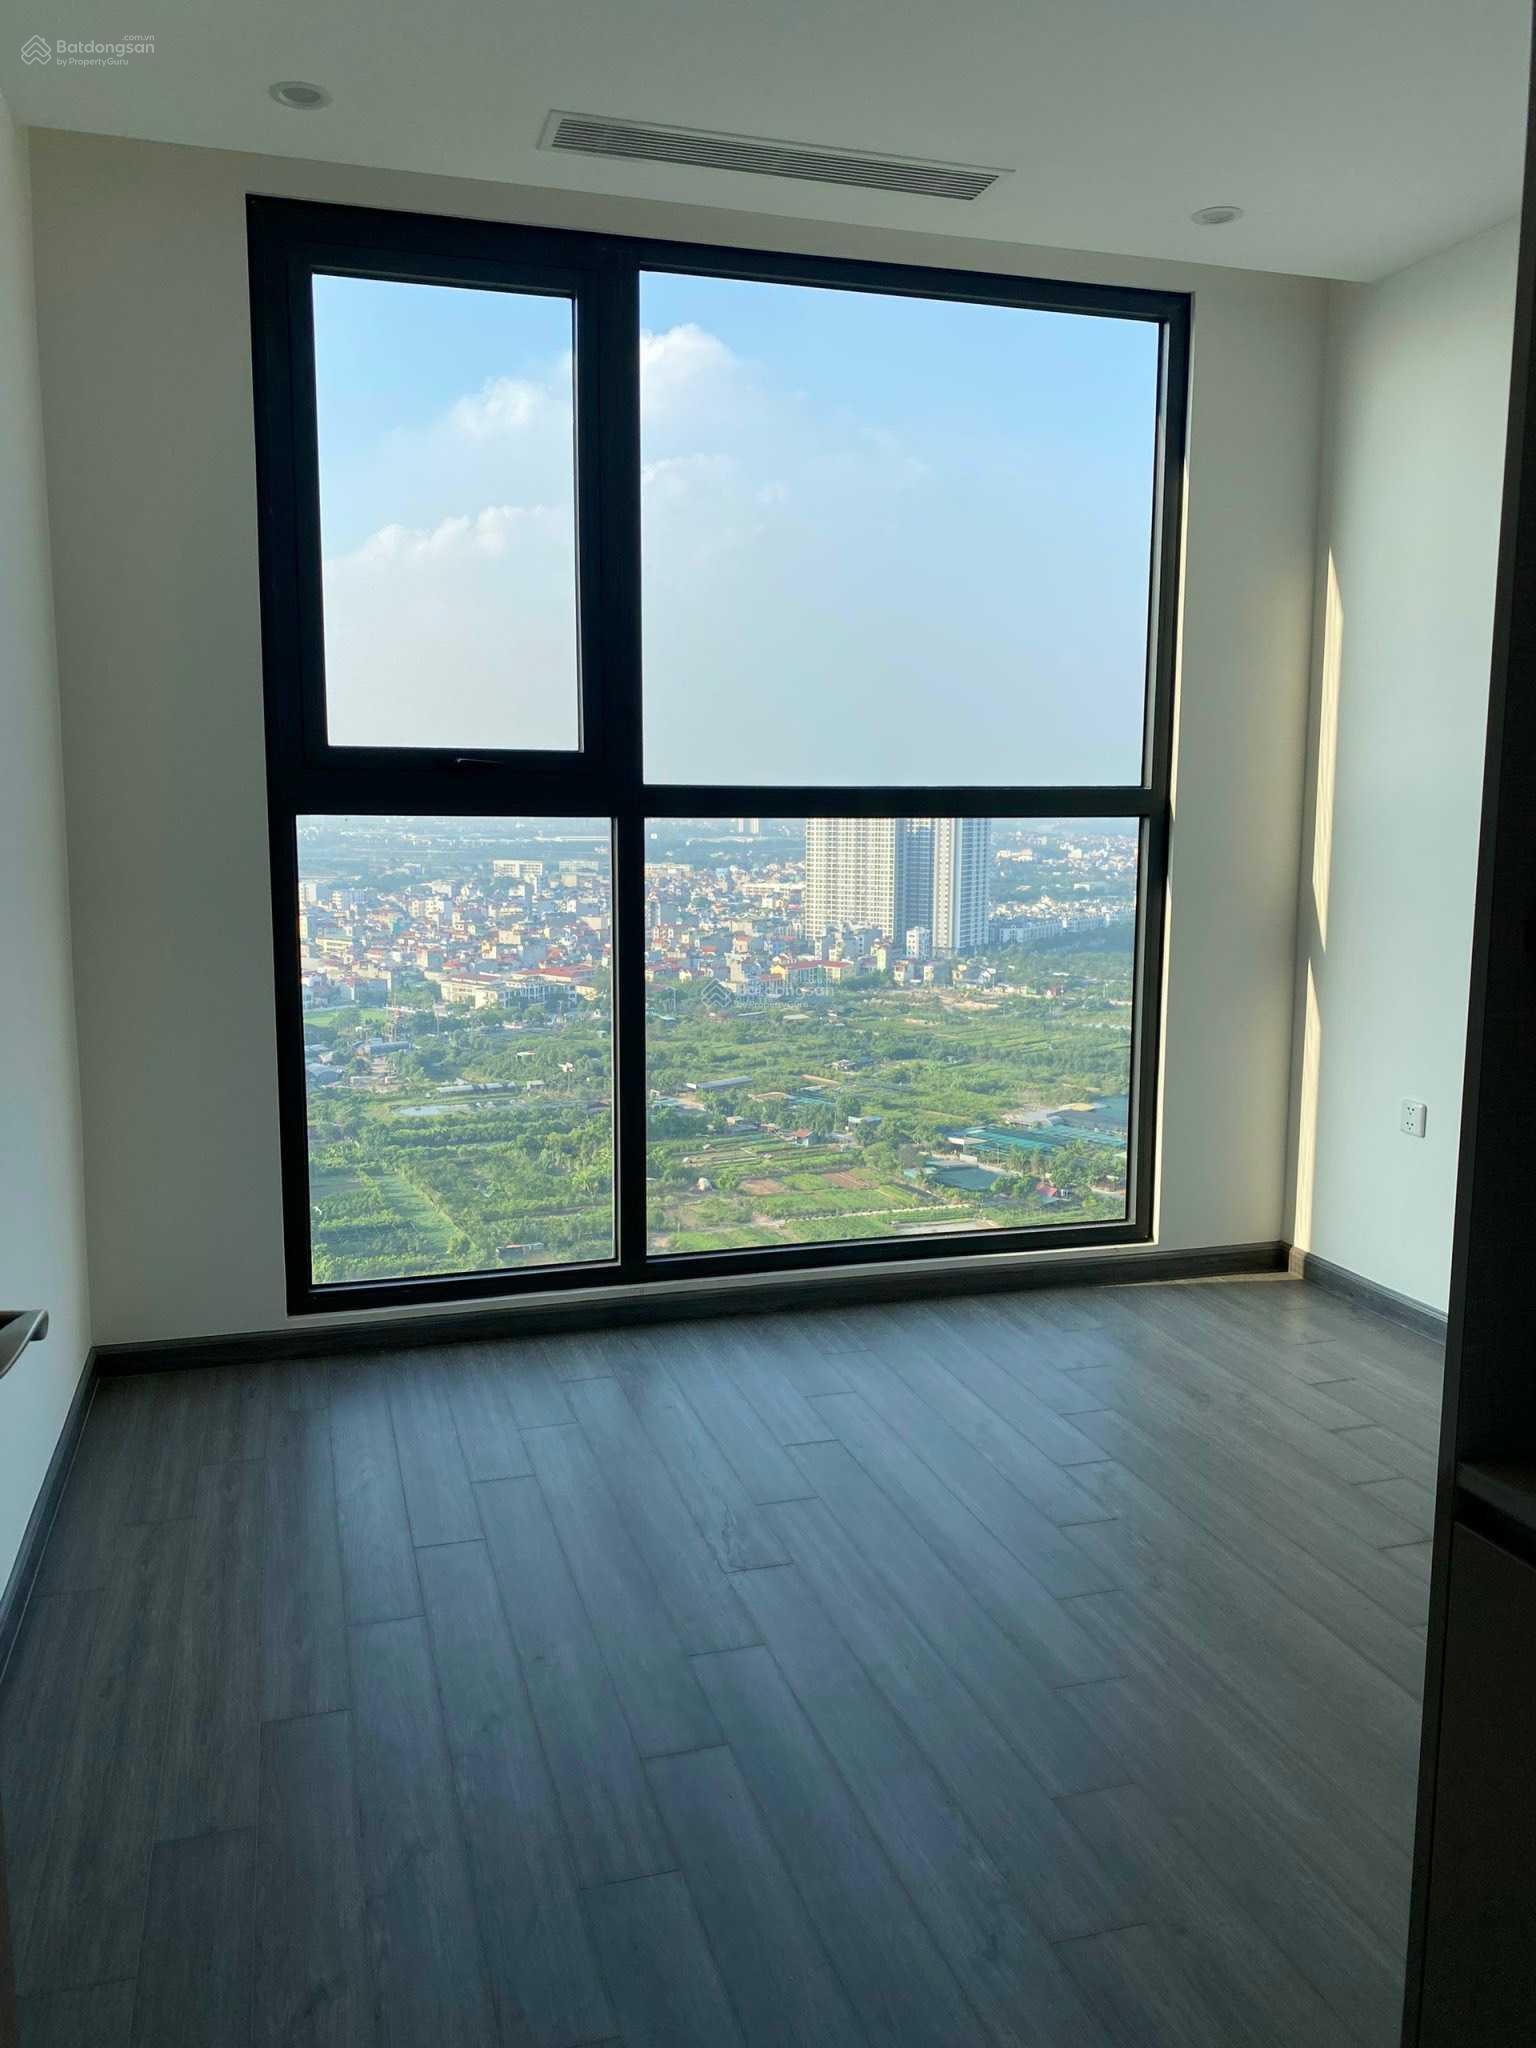 Cần bán căn hộ Studio hướng Nam toà R1.10 Vinhomes Ocean Park 30m2 tầng cao view thông thoáng